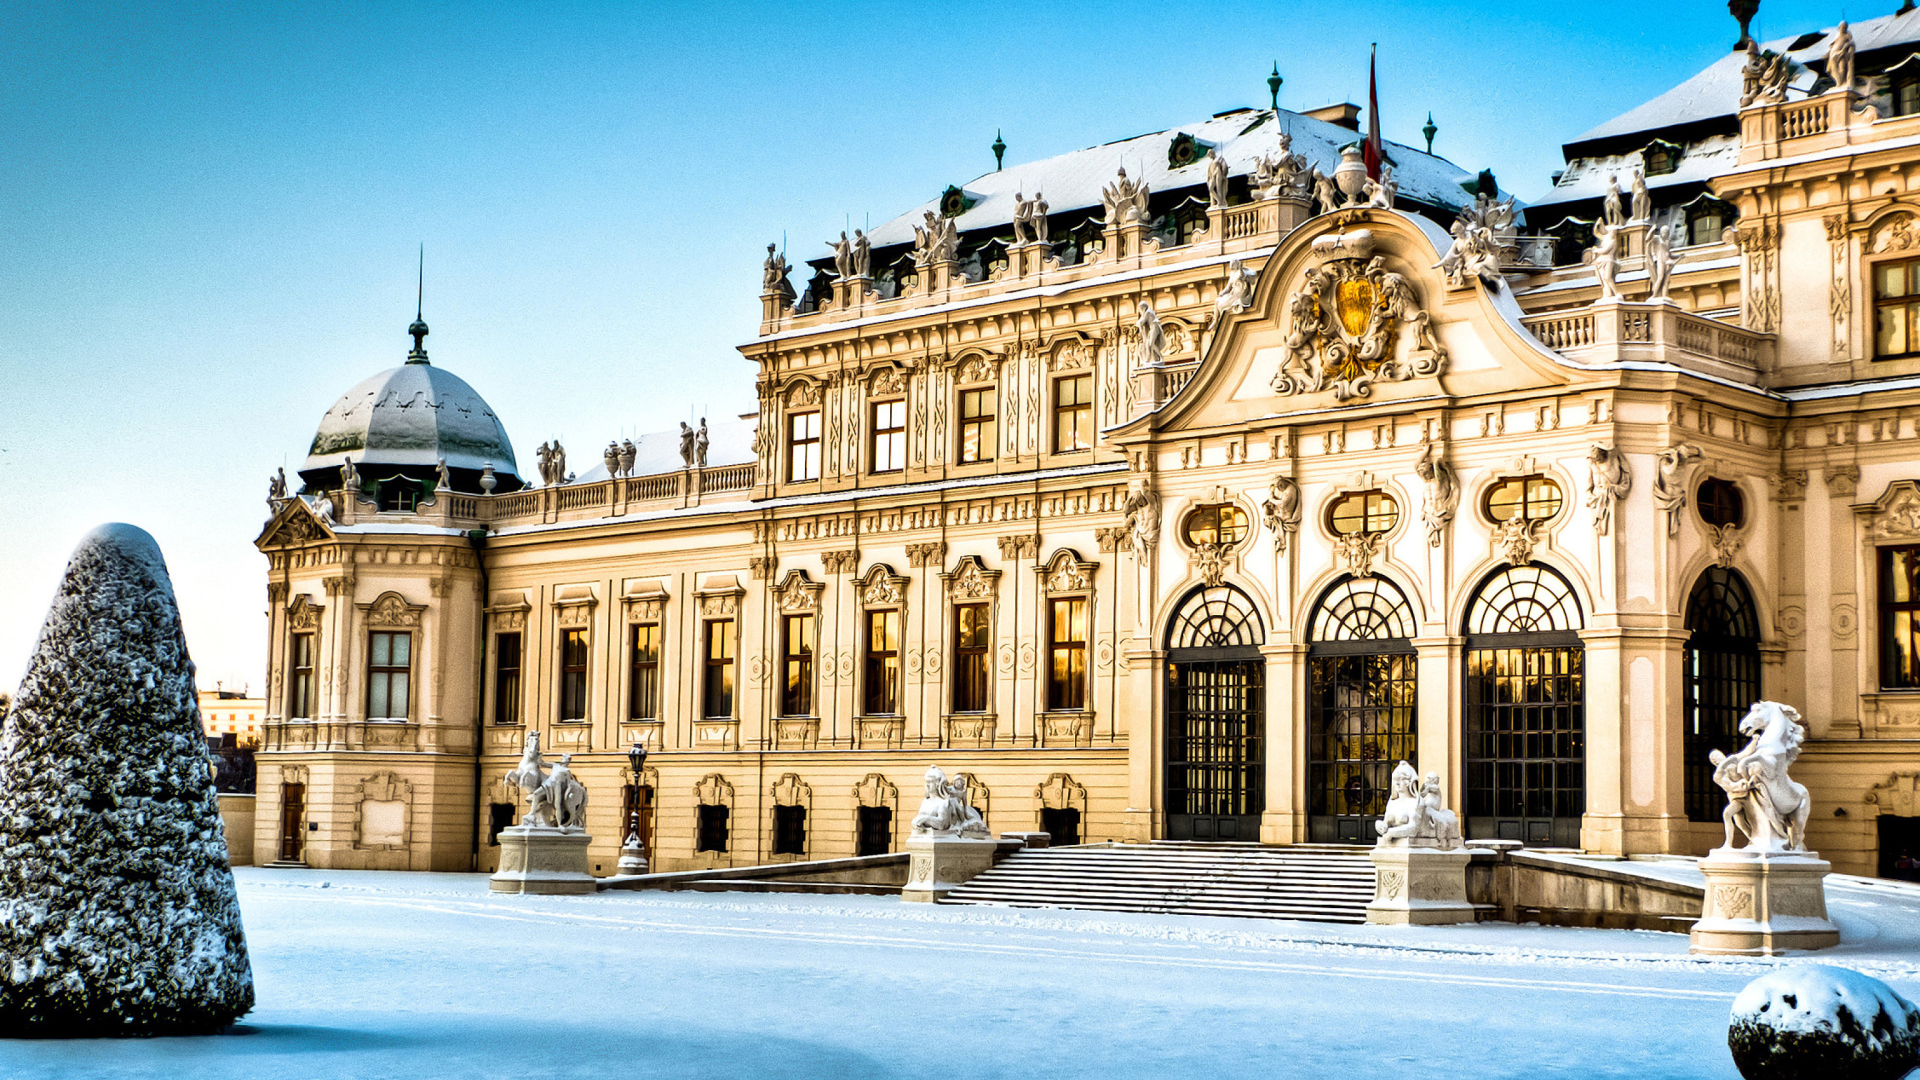 Vienna Belvedere Baroque Palace In Austria 2K Travel